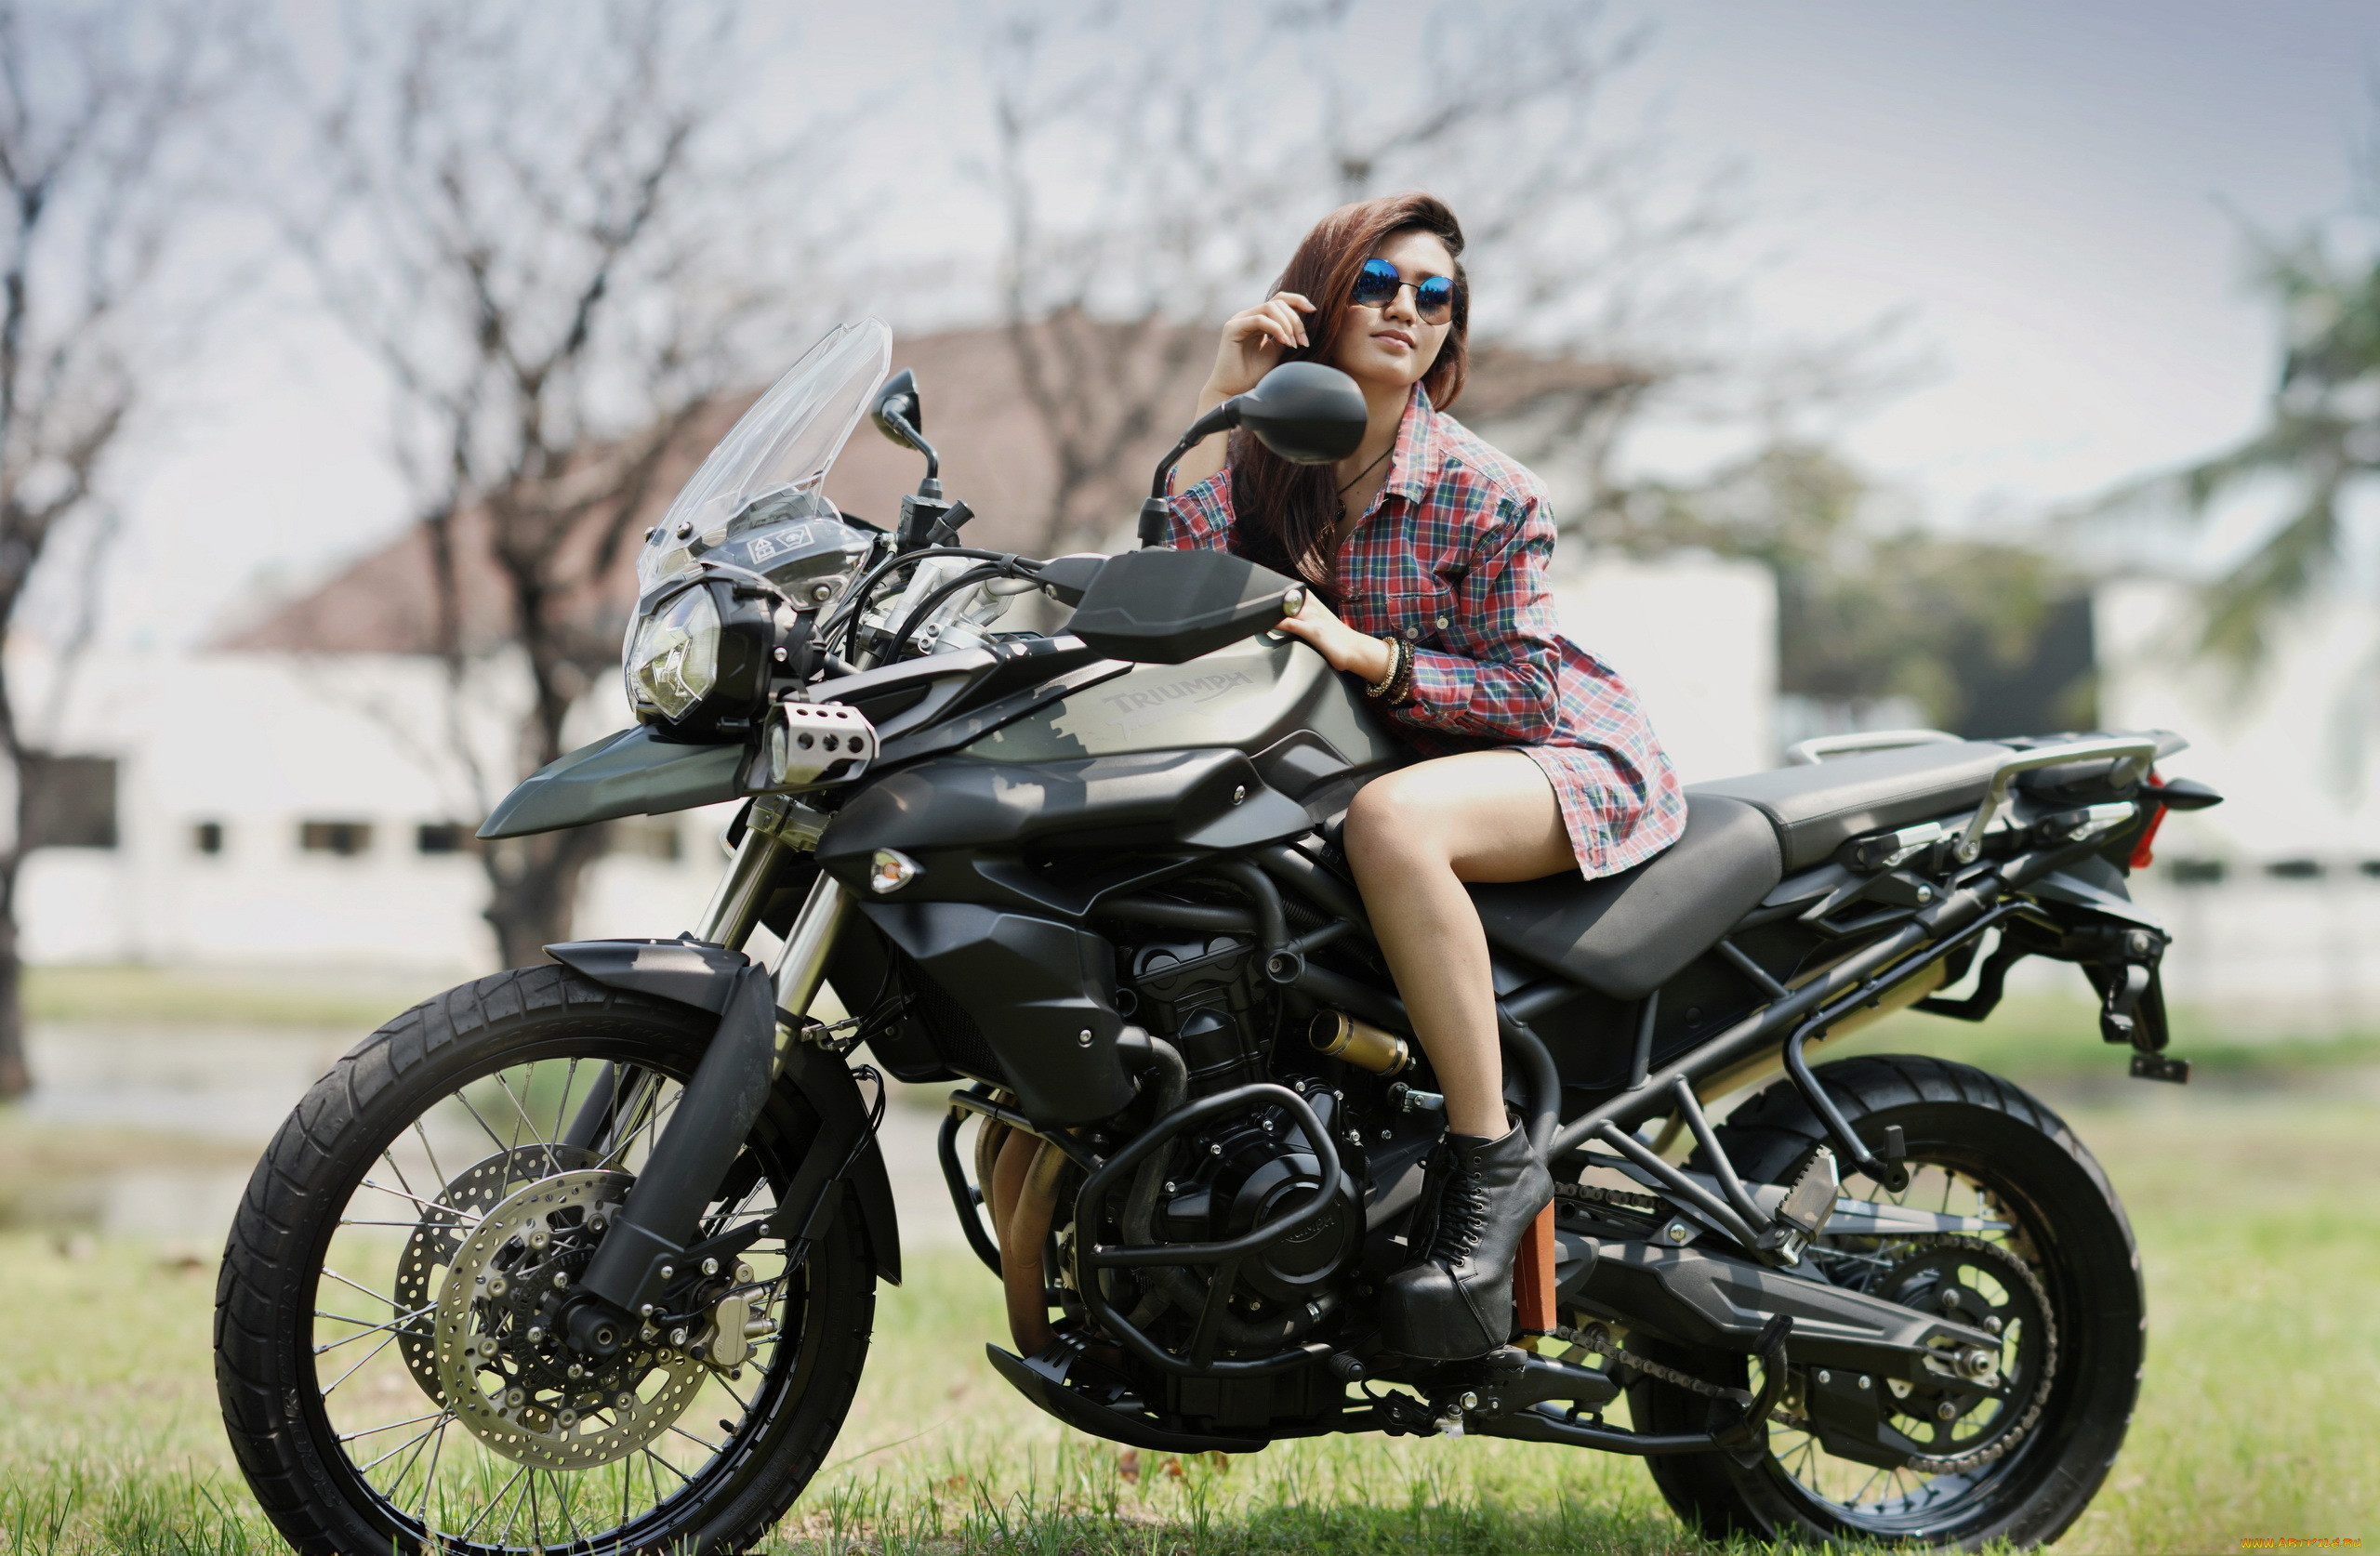 Про девушку на мотоцикле. Мото девушки. Красивые девушки на мотоциклах. Баба на мотоцикле. Фотосессия на мотоцикле девушки.